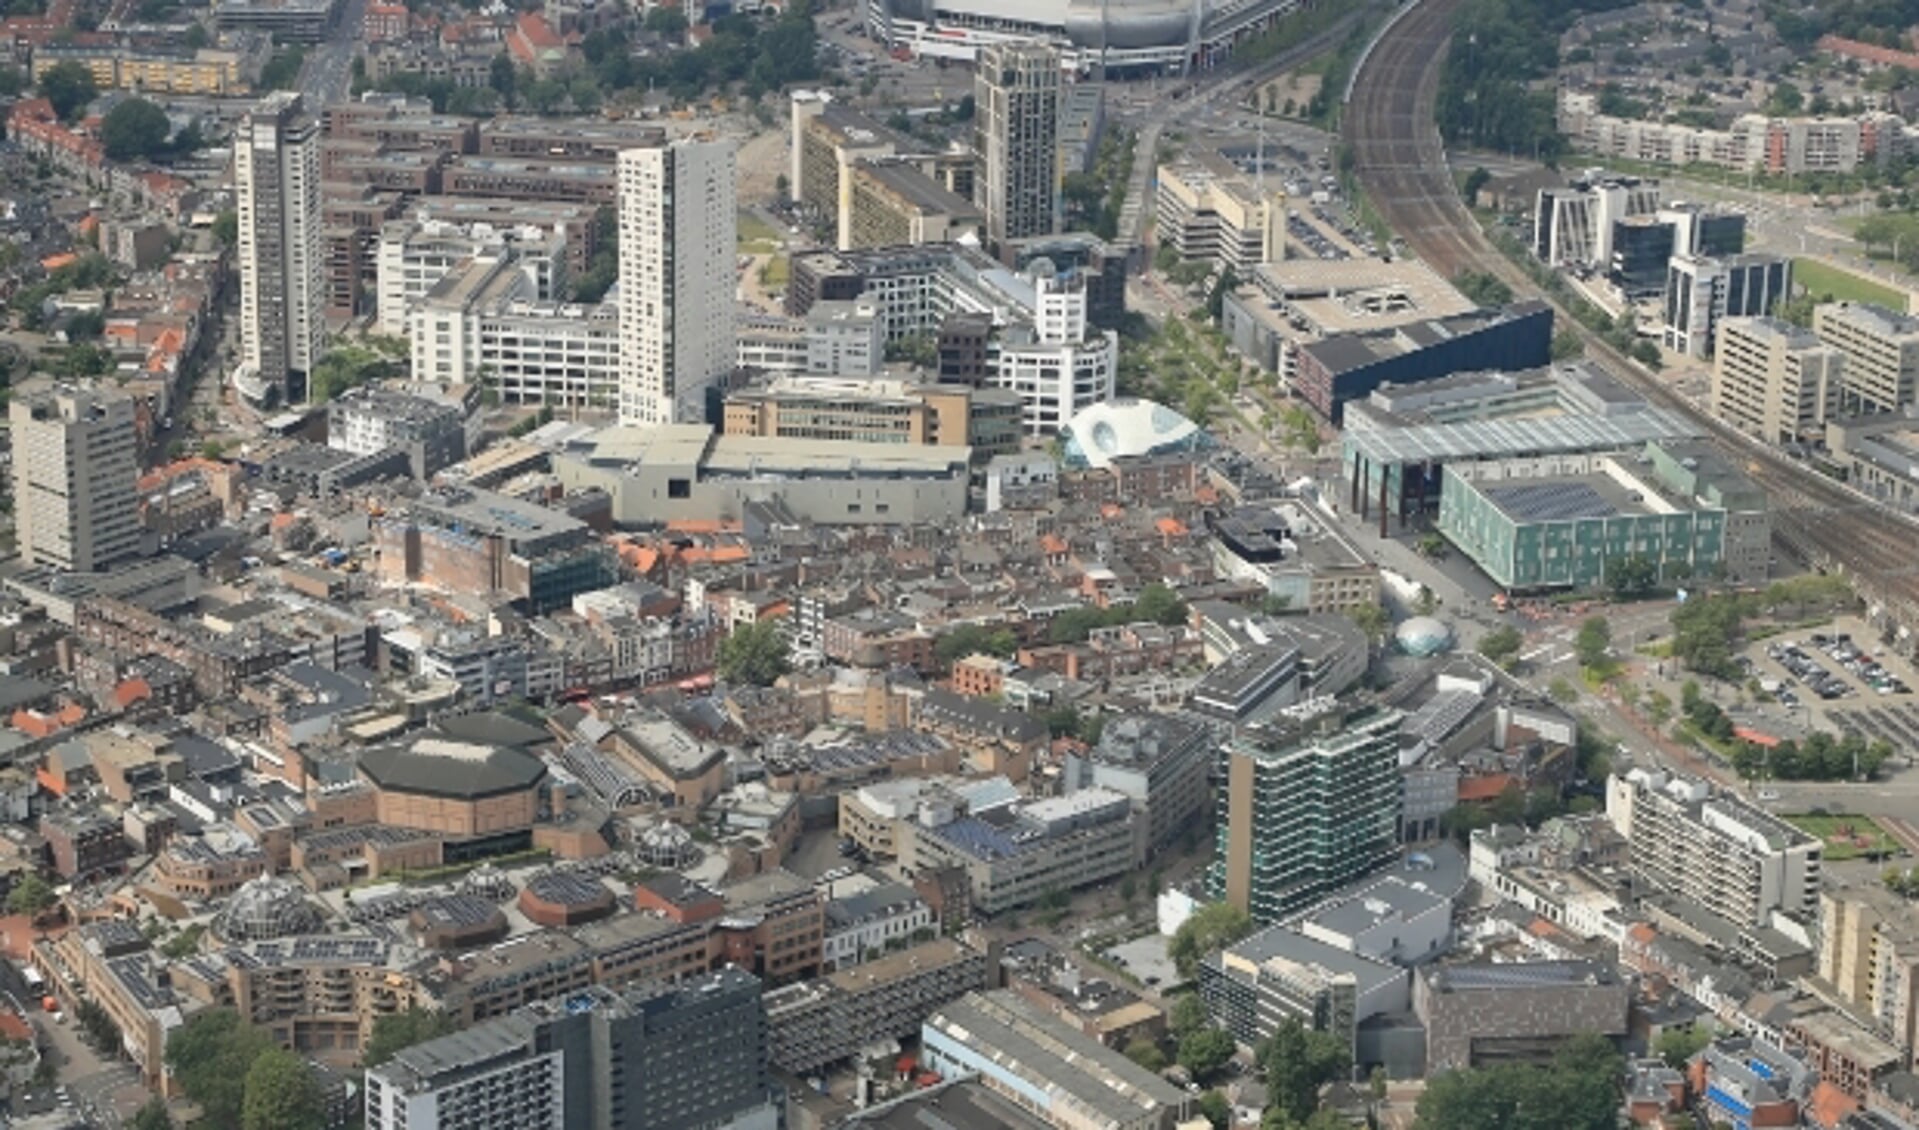 Hoogbouw kenmerkt het centrum van Eindhoven, bovenaan het Philips Stadion. (Foto: Ronald Otter).